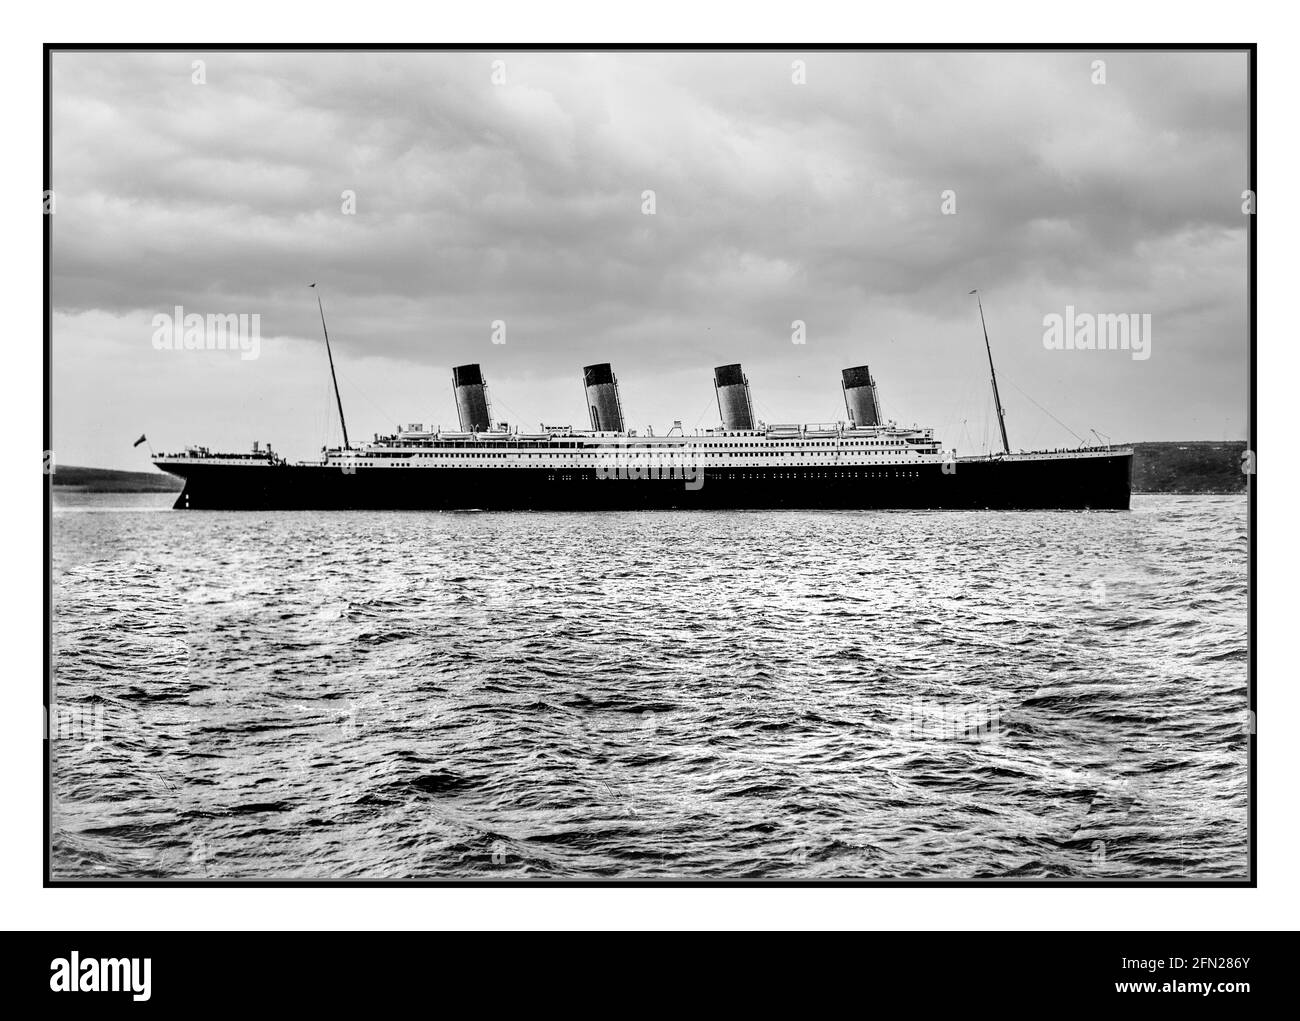 TITANIC 1912 RMS Titanic a Cobh Harbour (Queenstown) Data 11 Aprile 1912 nave a vapore transatlantica britannica, costruita a Belfast presso il cantiere Harland & Wolff dal 1909 al 1912 su ordine della compagnia di navigazione White Star Line. Al momento della messa in servizio, era la nave più grande del mondo. La notte tra il 14 e il 15 aprile 1912, durante il viaggio inaugurale, affondò nell'Atlantico settentrionale, dopo aver colato un iceberg. Foto Stock